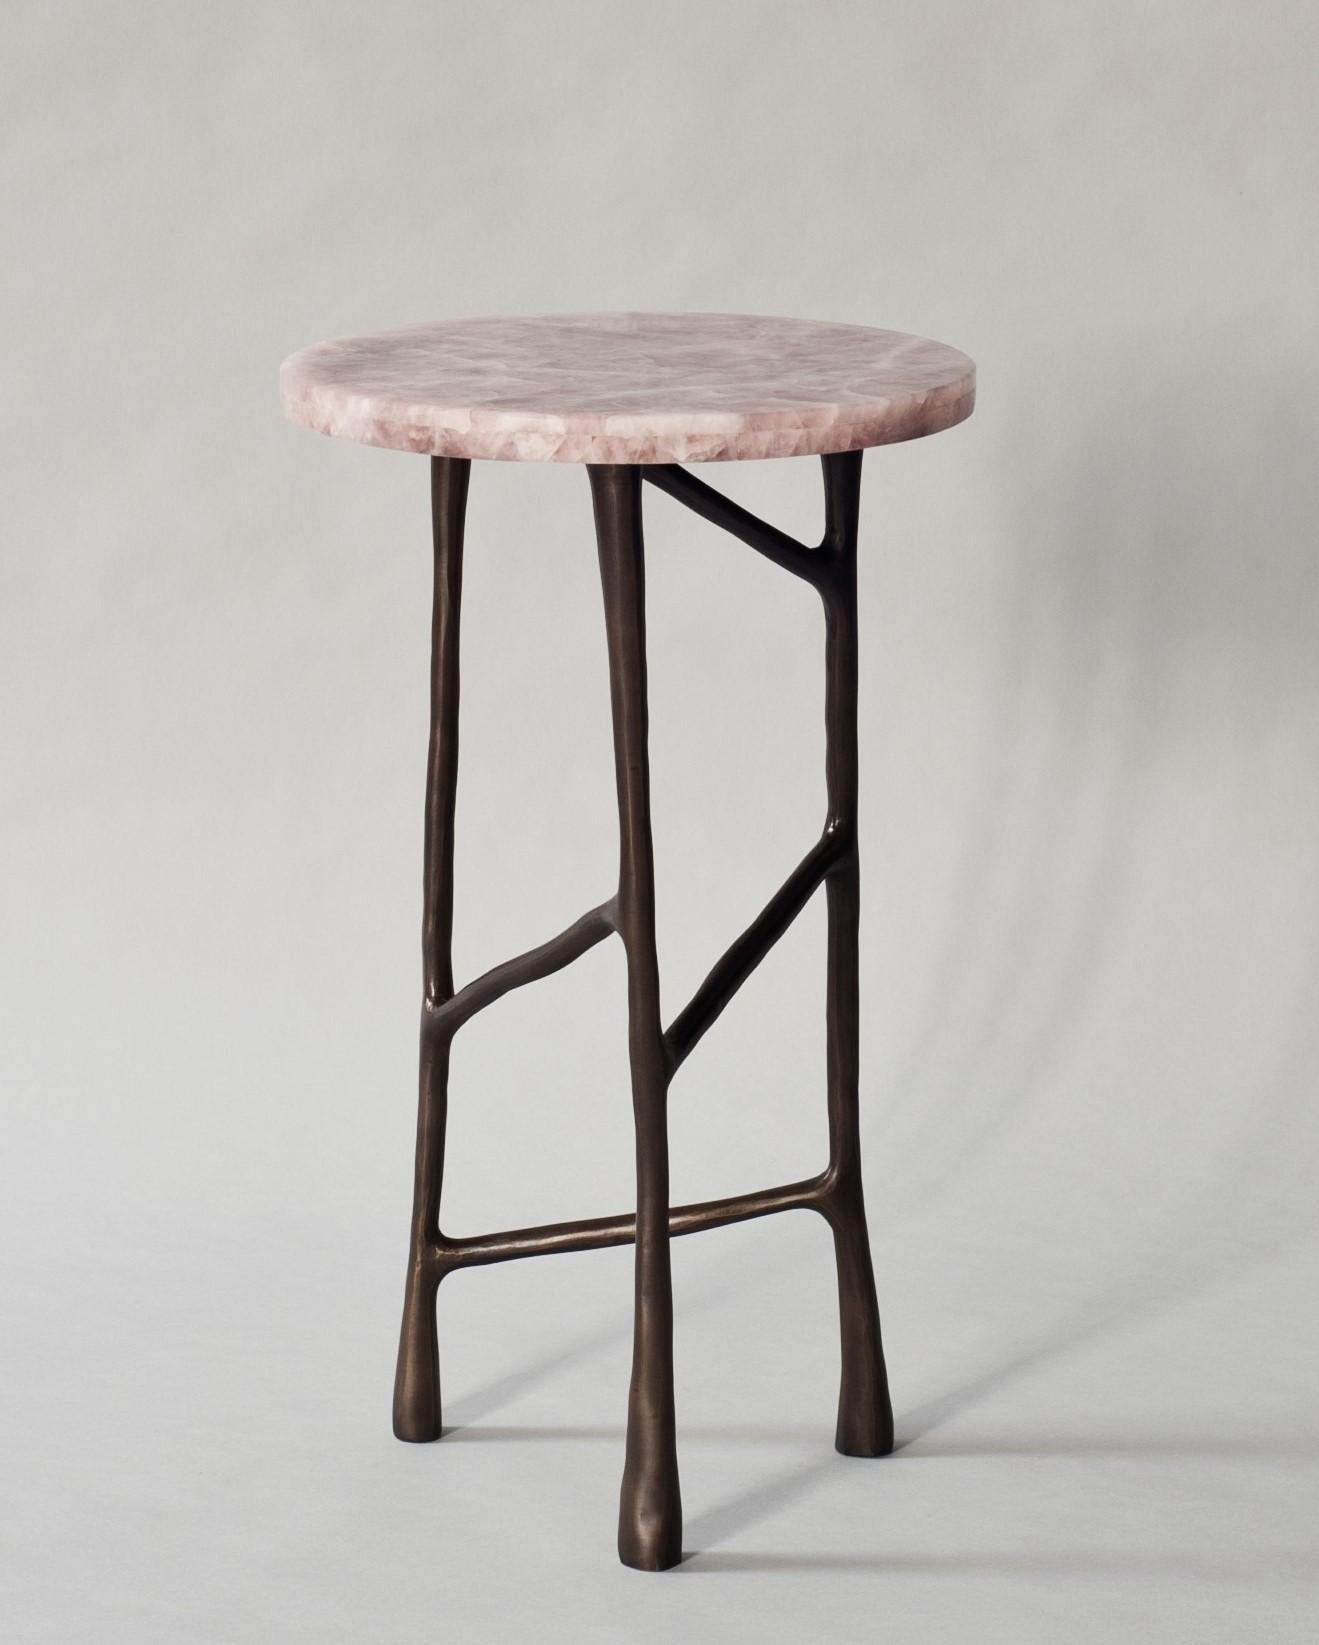 La table d'appoint ou table à boire Forma de DeMuro Das a un plateau en quartz rose et une base sculpturale moulée à la main en bronze antique massif.